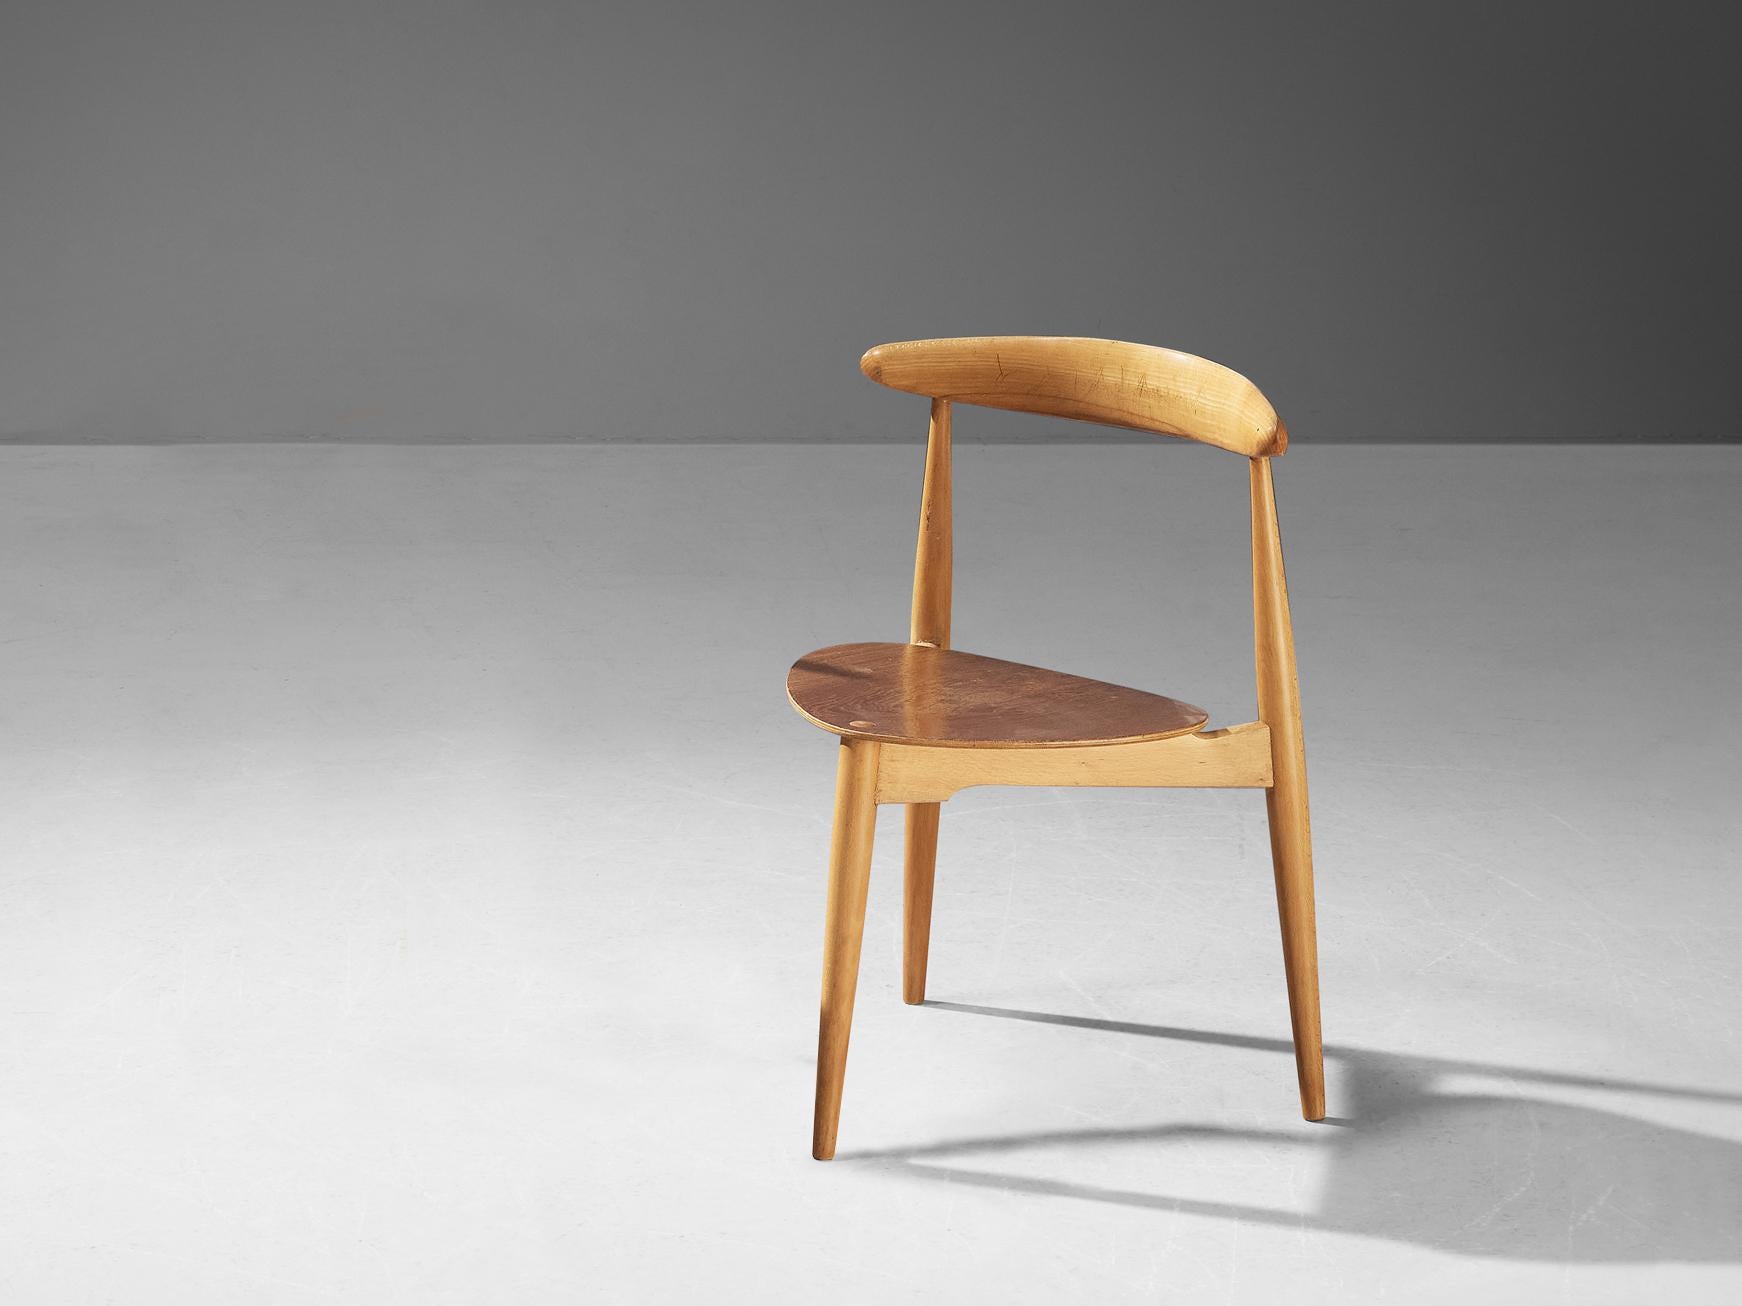 Hans Wegner pour Fritz Hansen, chaise de salle à manger 'Heart' modèle '4103', teck, hêtre, Danemark, créé en 1953.

Magnifique chaise conçue par Hans Wegner en 1953. La chaise est conçue pour prendre le moins d'espace possible tout en ayant une